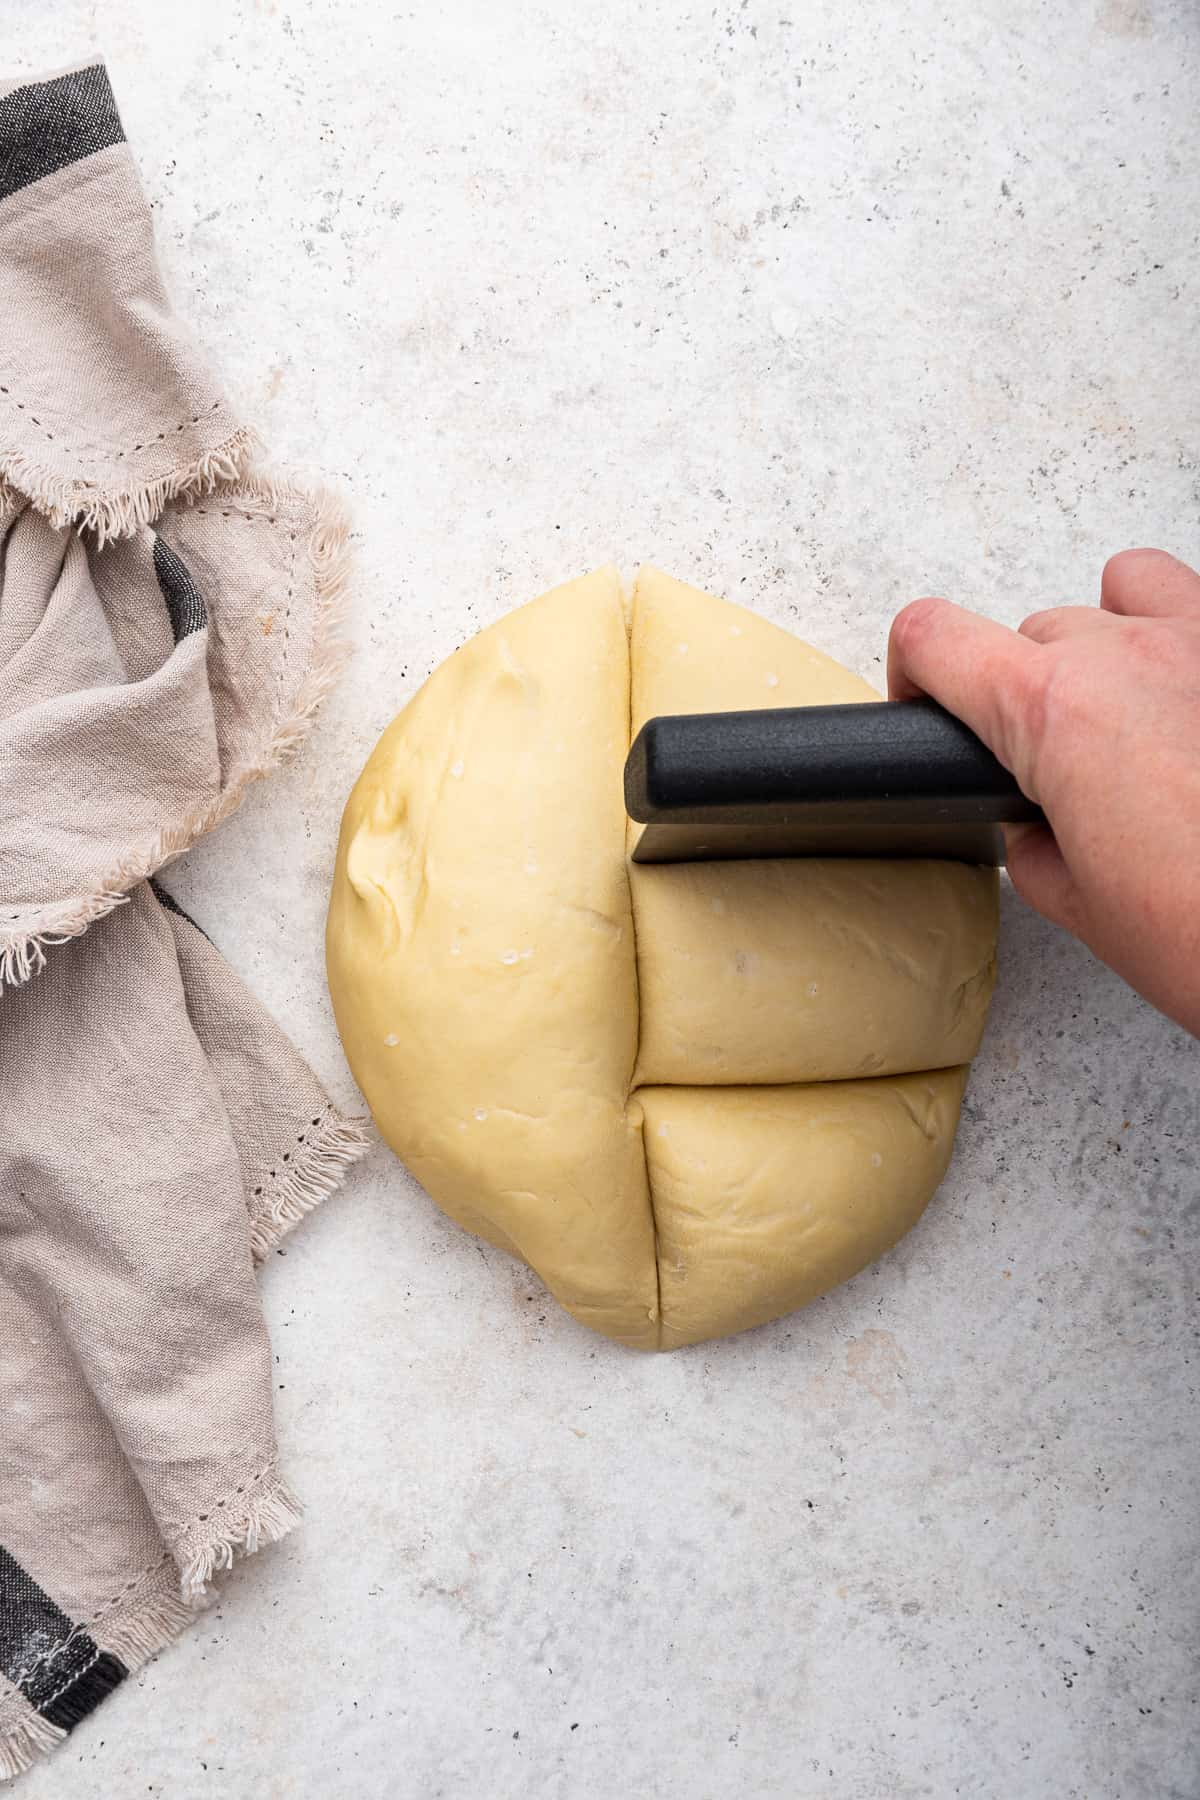 Cutting piadina dough into 6 pieces.